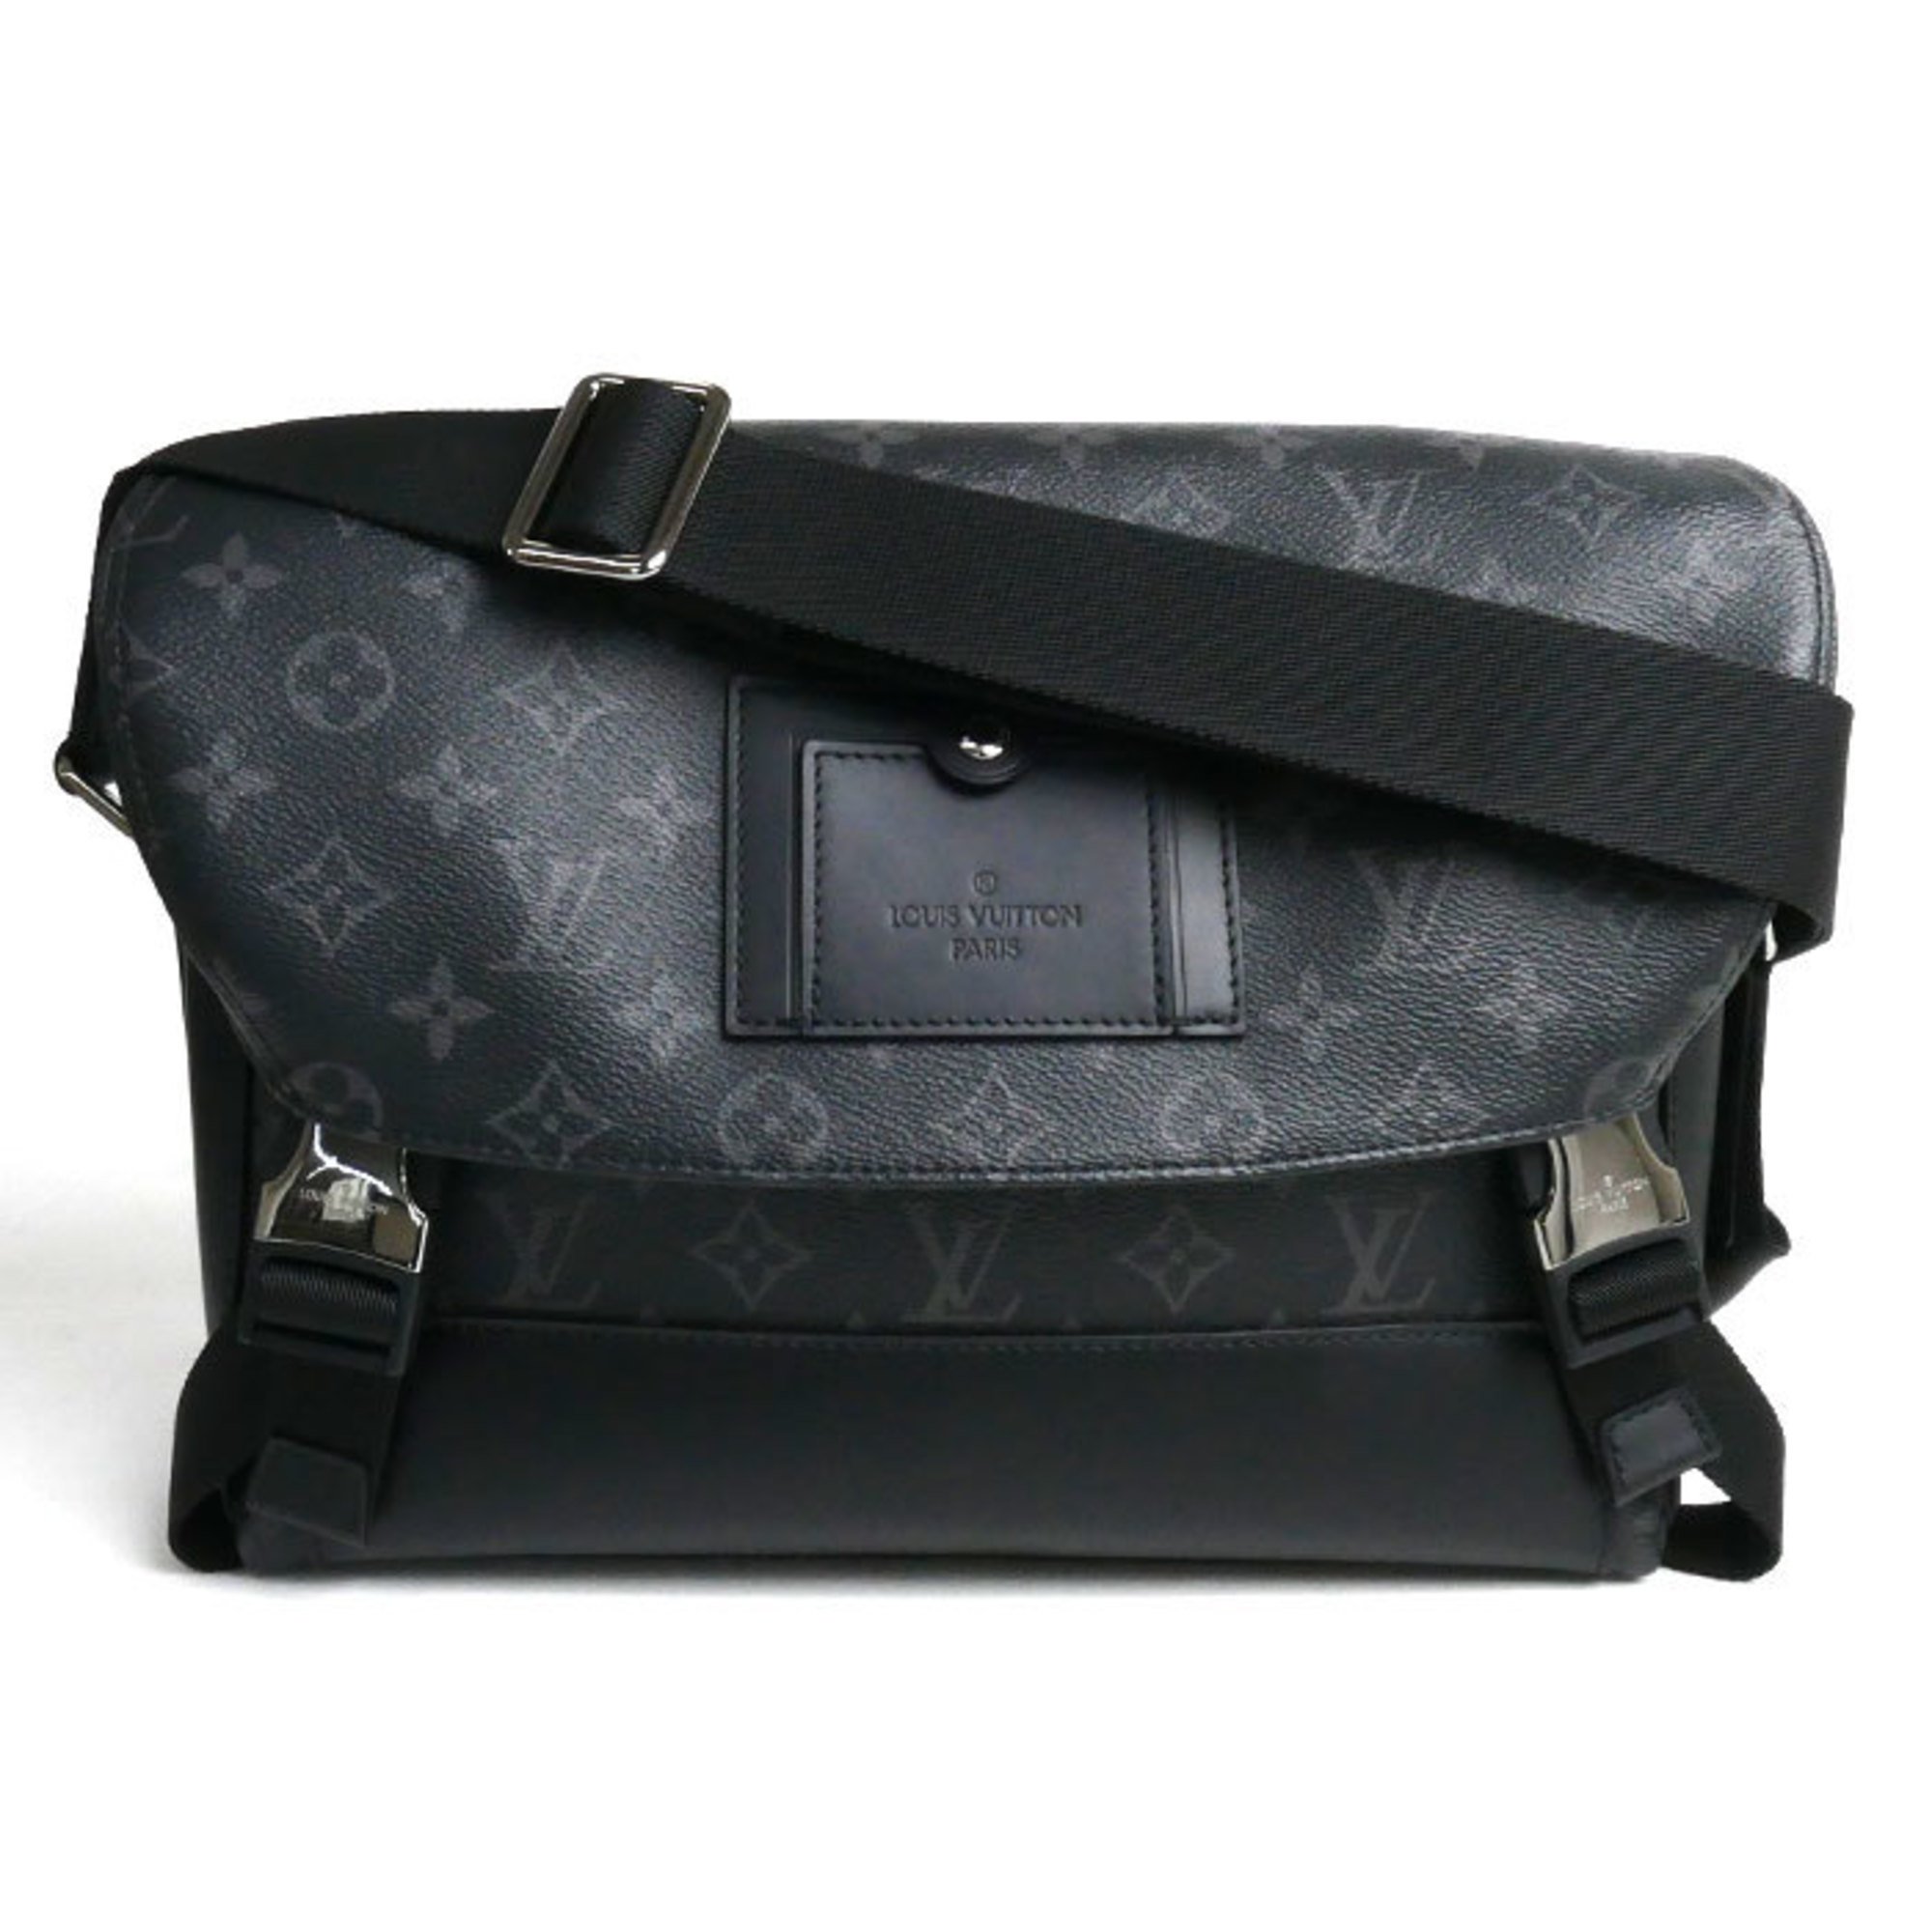 LOUIS VUITTON Louis Vuitton Voyage PM Shoulder Bag Monogram Eclipse Black M40511 Men's